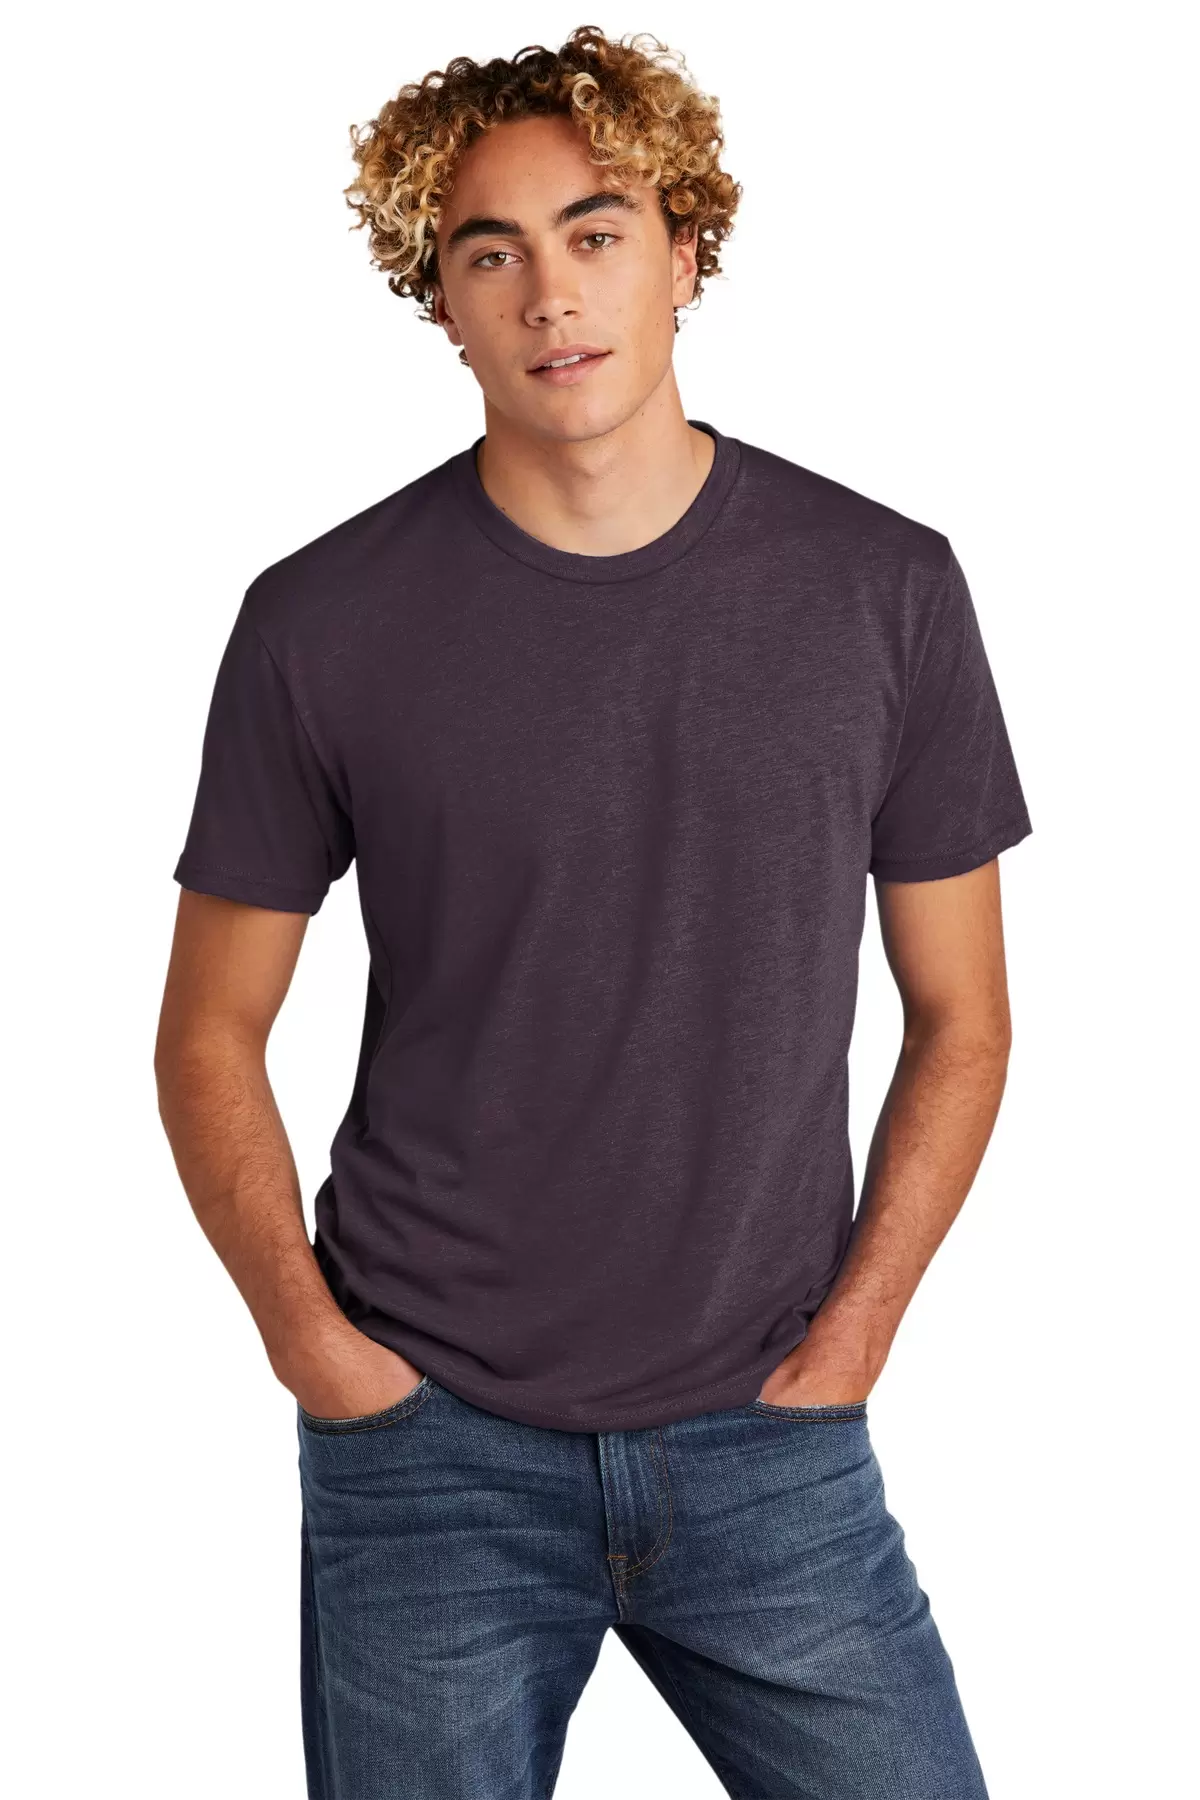 Men's Cotton Crew Neck Short Sleeve T-Shirts, Bulk Tshirt Color Mix